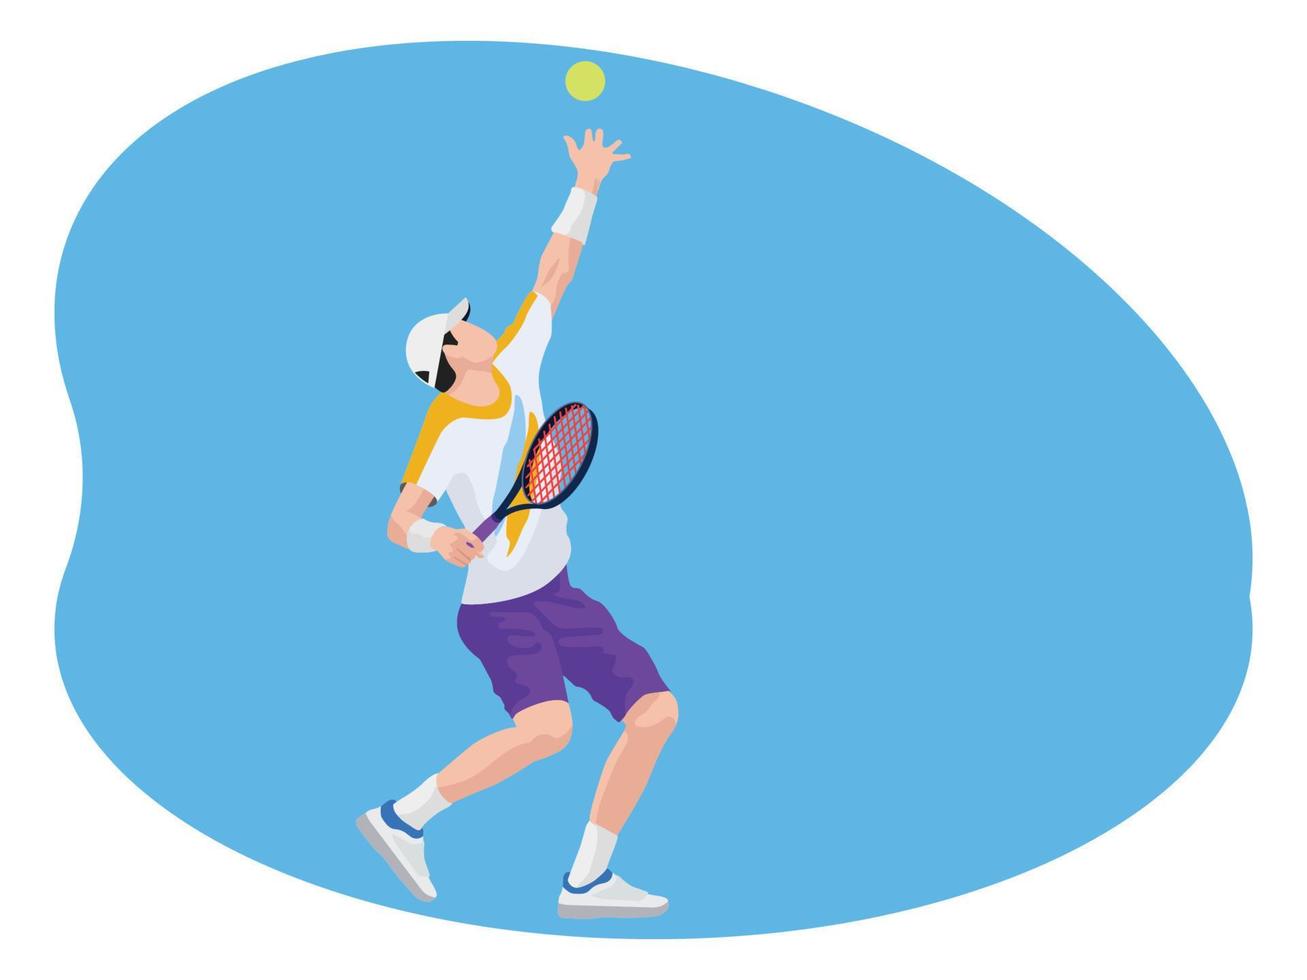 joueur de tennis masculin belle illustration vecteur